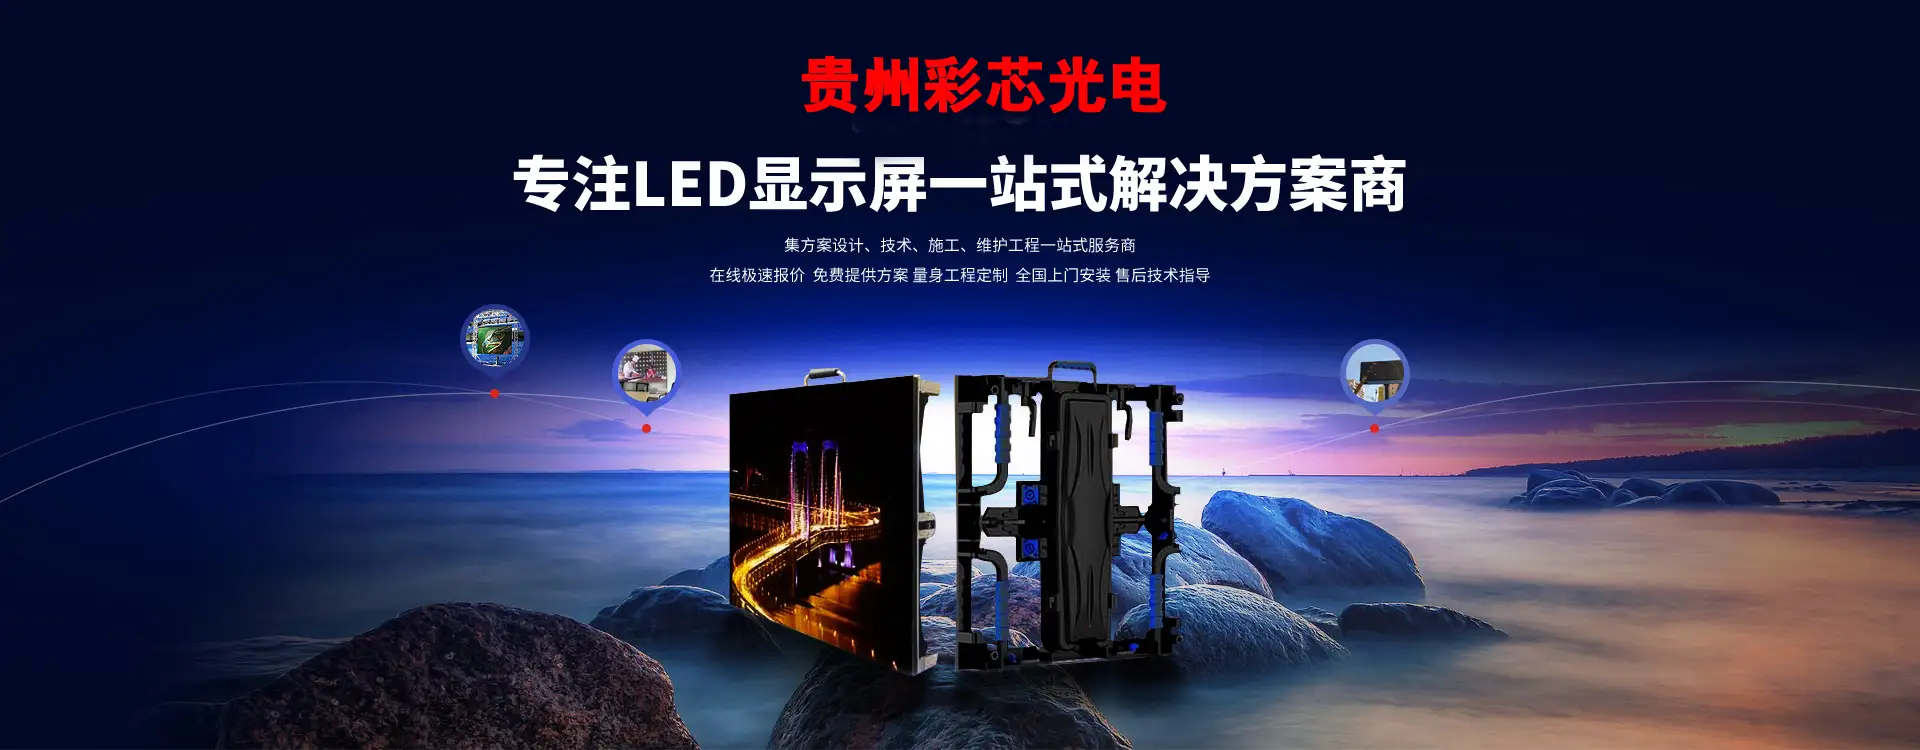 贵州彩新LED显示屏安装工程有限公司